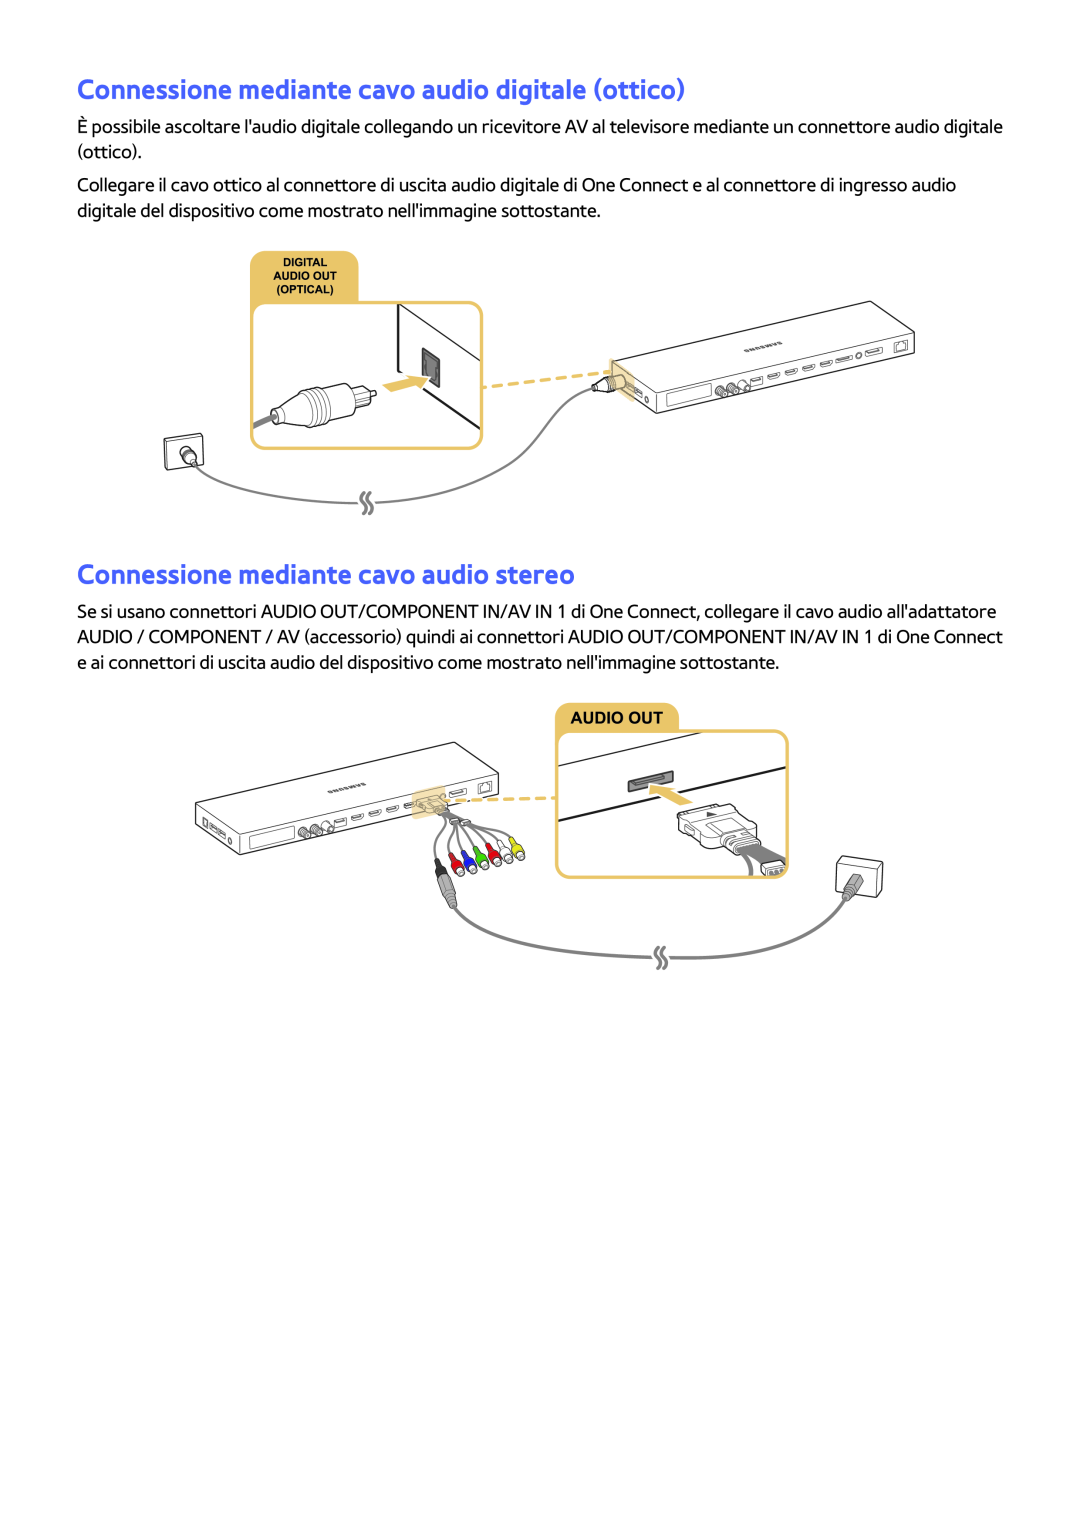 Samsung UE55JS9000TXZT manual Connessione mediante cavo audio digitale ottico, Connessione mediante cavo audio stereo 